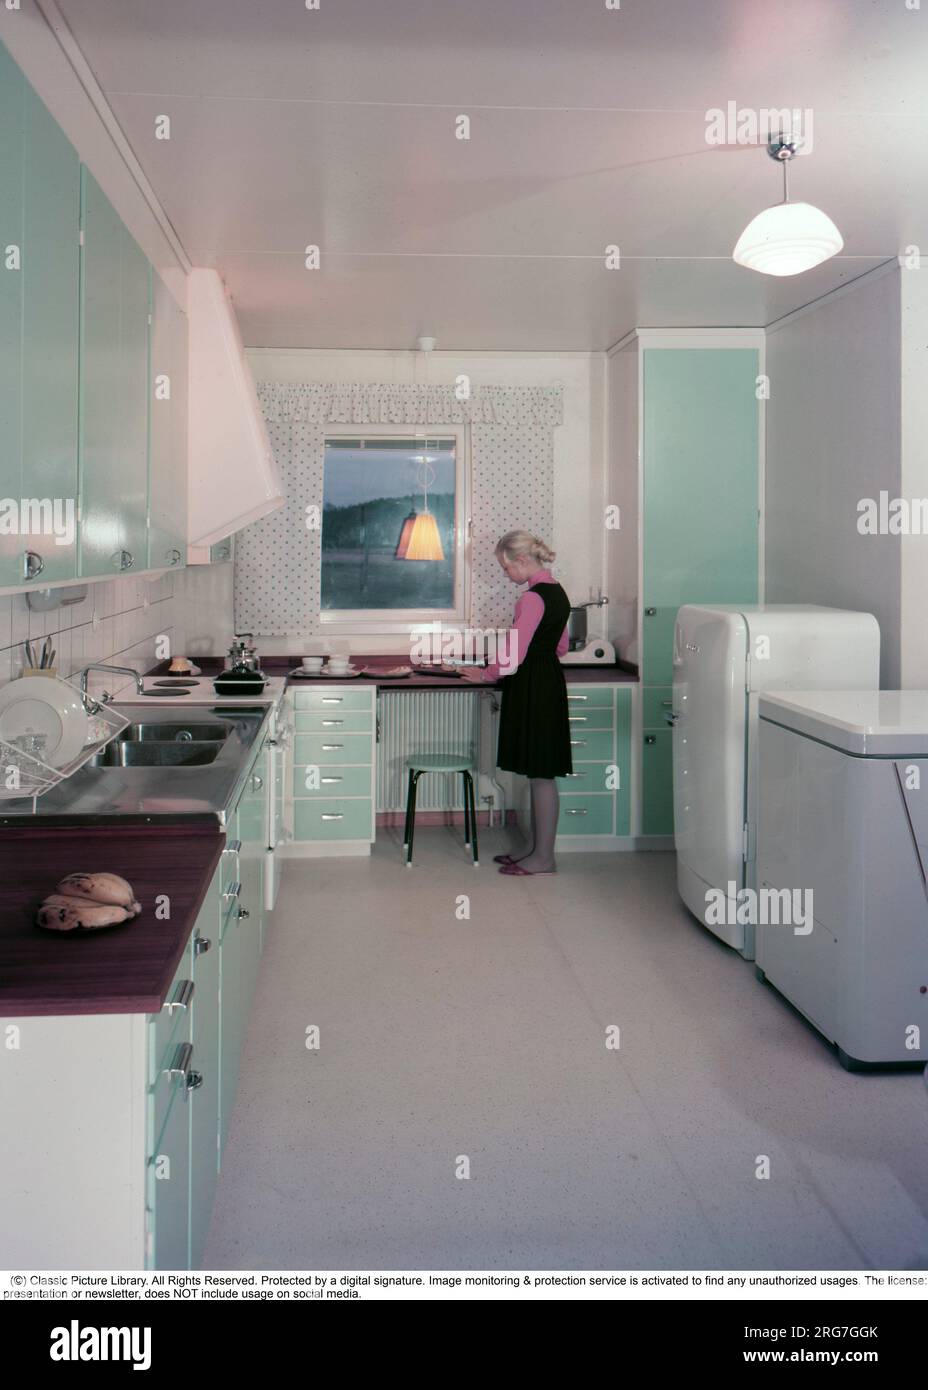 Au début des années 1960 Une belle image en couleur d'une cuisine typique des années 1950 - 1960 avec les placards et les portes de la cuisine peintes dans une couleur verte. C'est la décennie de la première cuisine bien planifiée et organisée et ses fonctions pour travailler et avoir de la place pour les appareils comme la cuisinière électrique, le congélateur et le réfrigérateur. Elle est debout près du banc de cuisine. Suède 1960. Conard réf. BV45-3. Banque D'Images